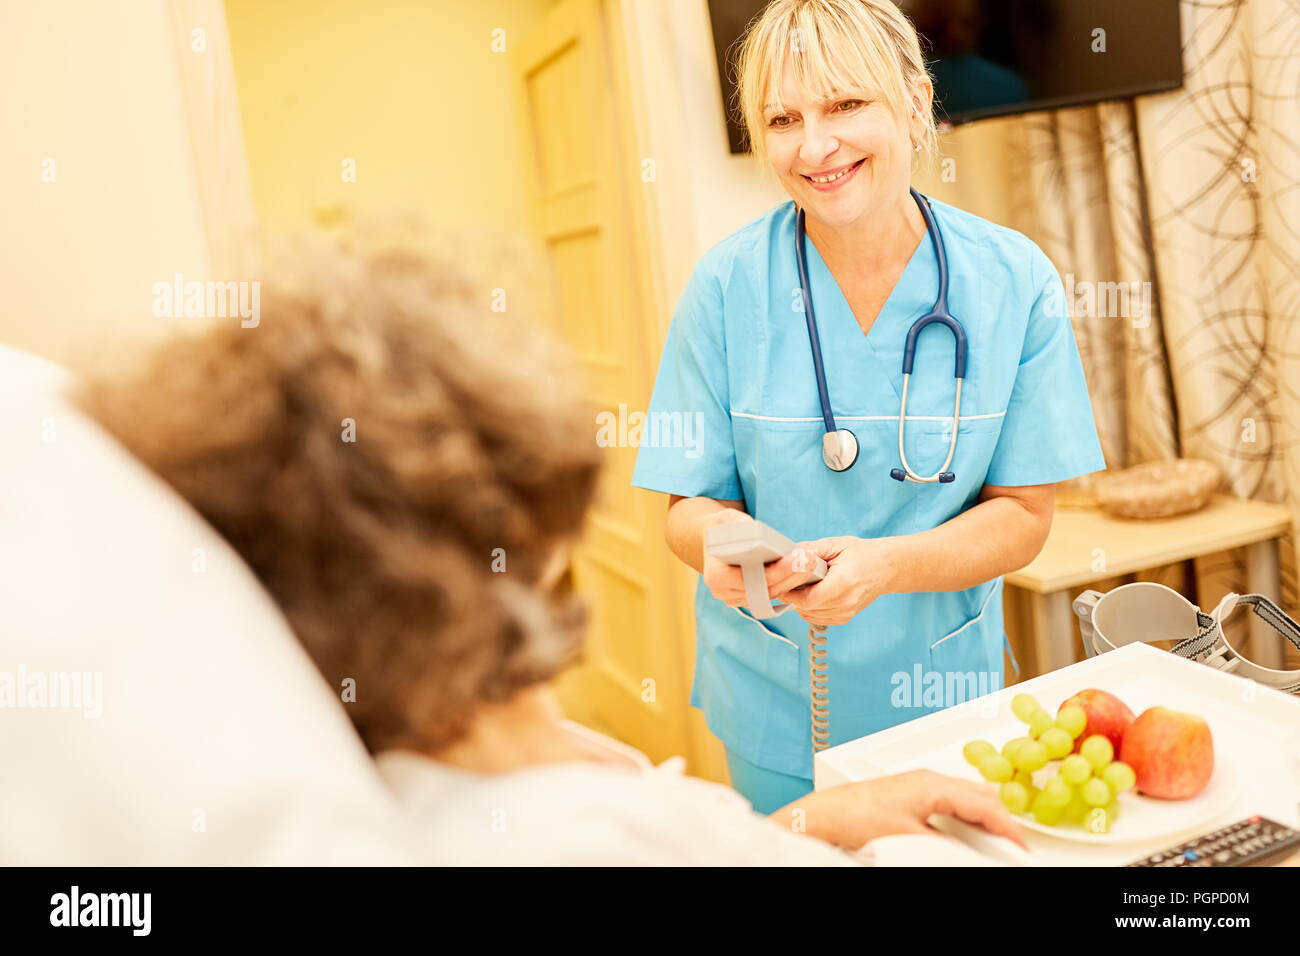 La Enfermería Mujer trae altos sano desayuno a la cama de cuidados en el hogar Foto de stock